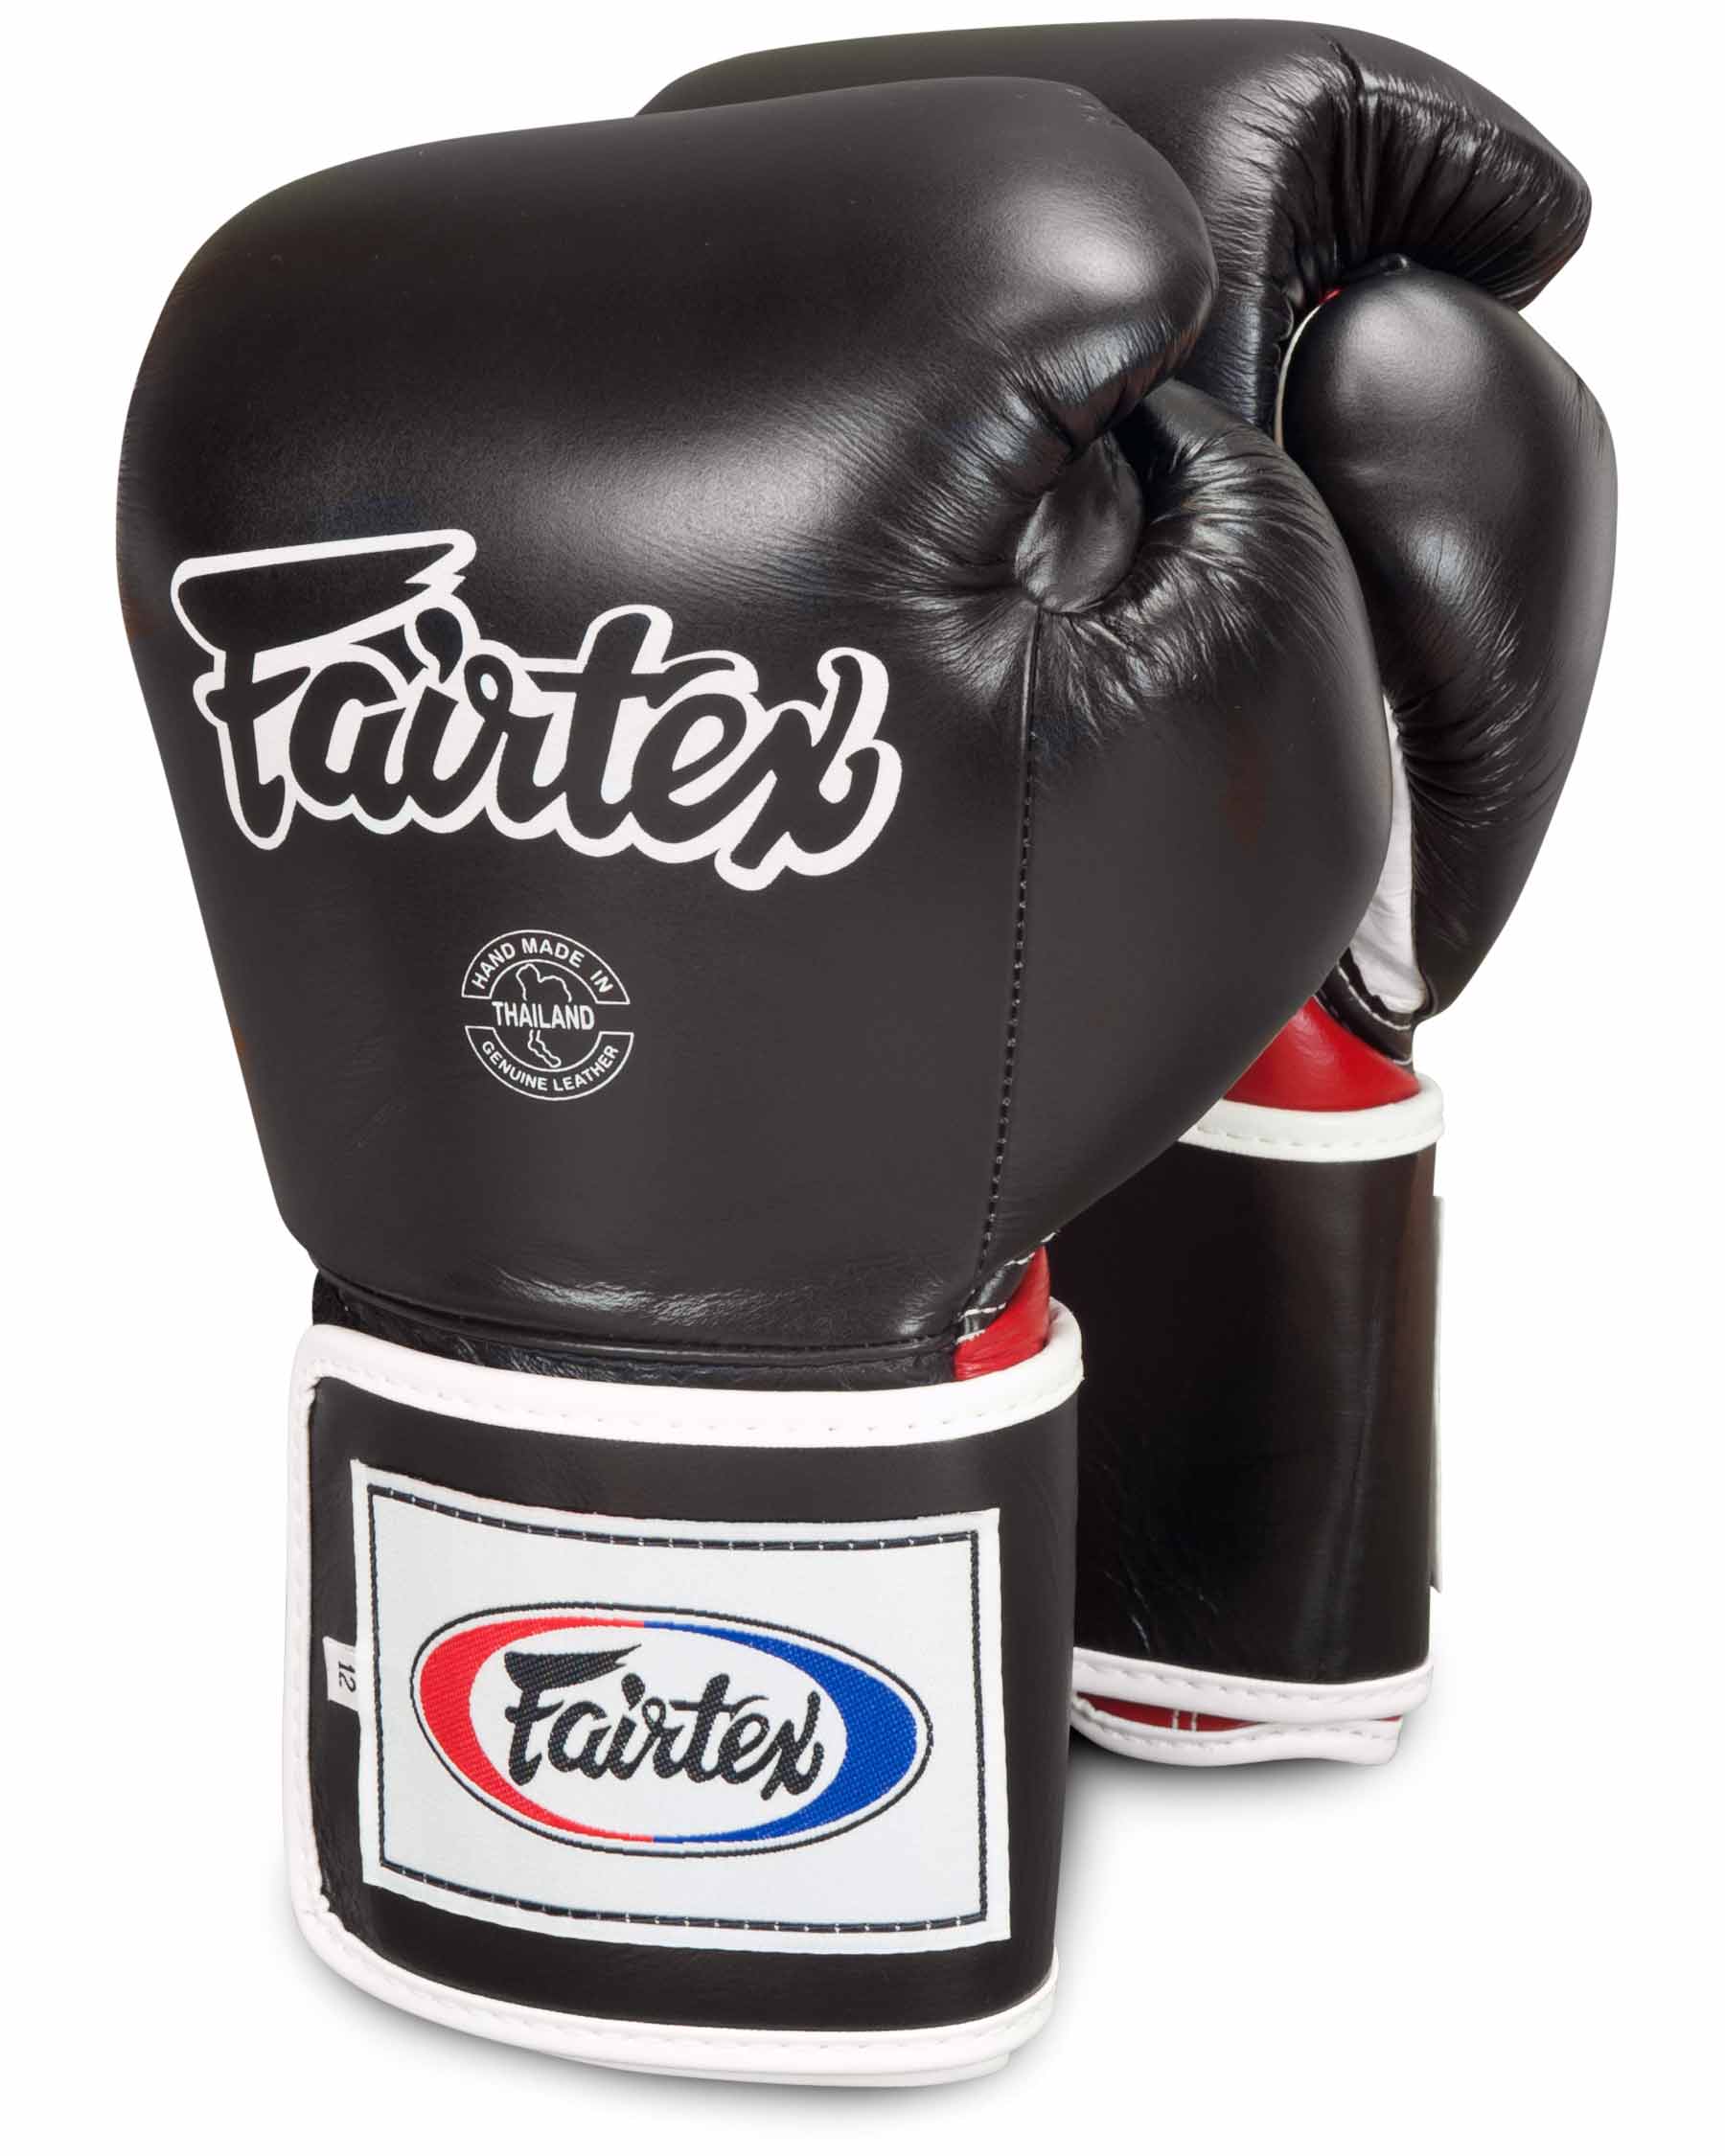 Fairtex Leather Boxing Gloves - Super Sparring BGV5 - Boxing gloves, training  gloves and sparring gloves - Fairtex, Muay Thai and MMA Shop